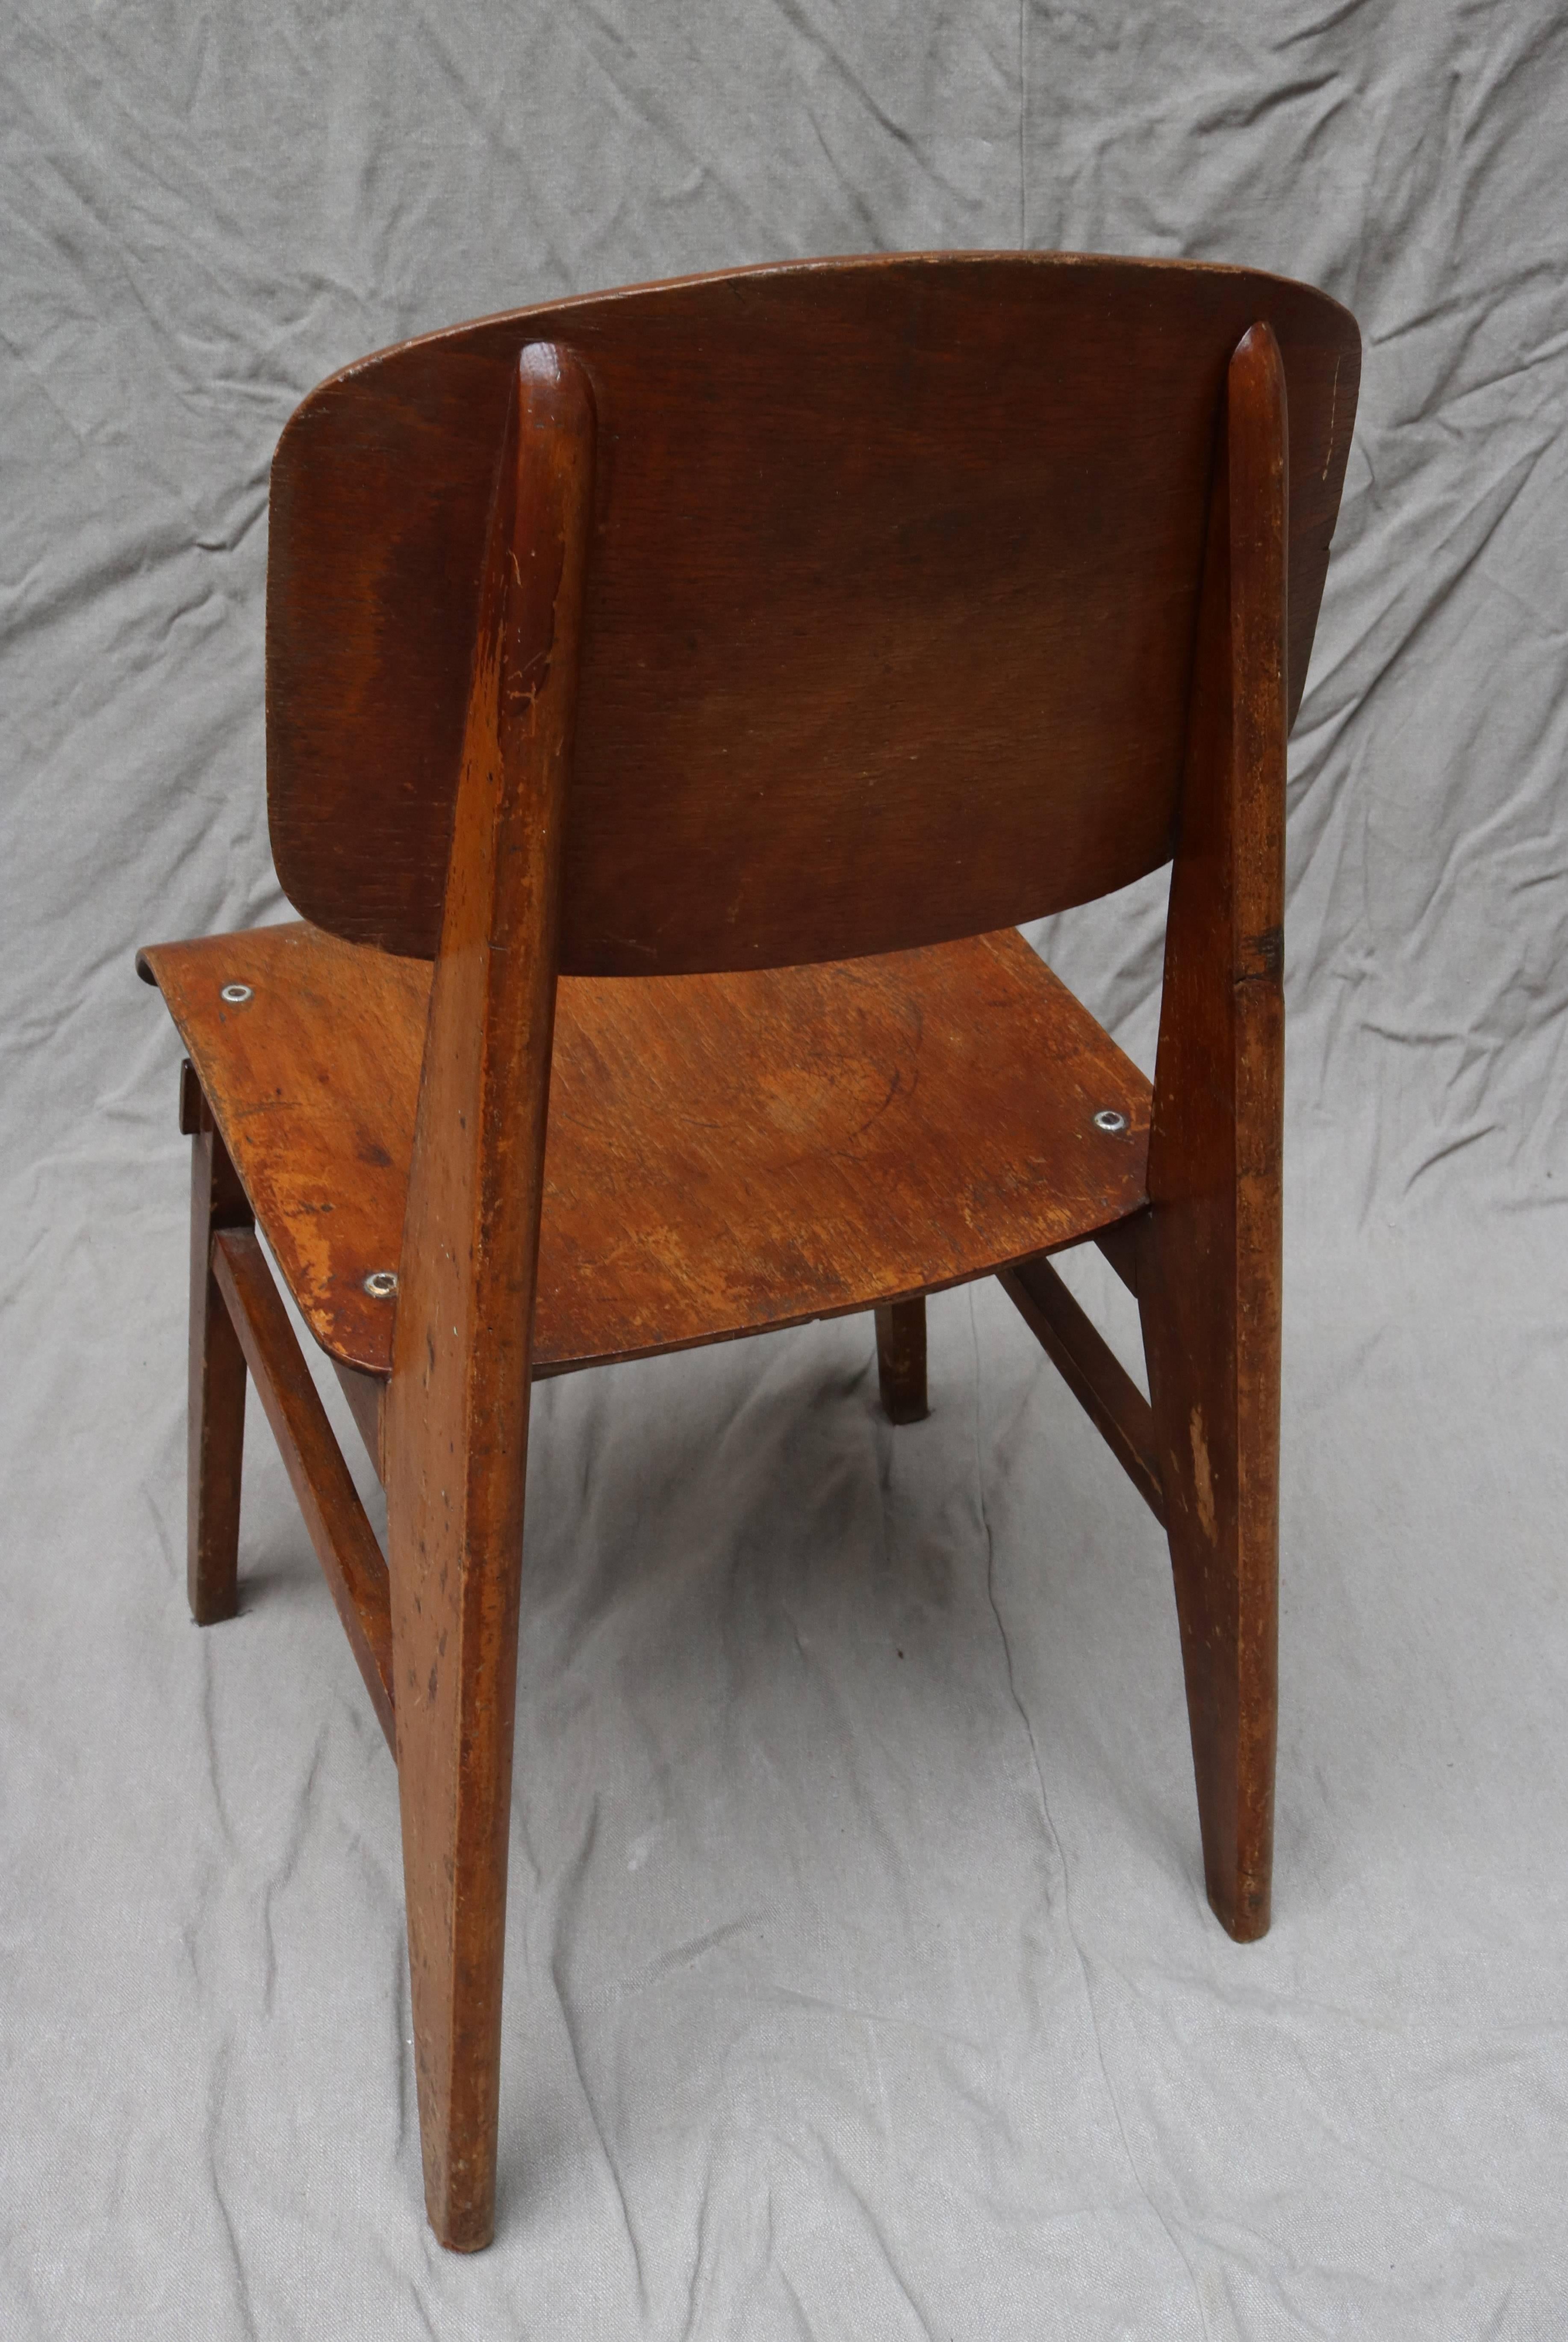 Oak Unique Midcentury Wooden Chair by Jean Prouvé For Sale